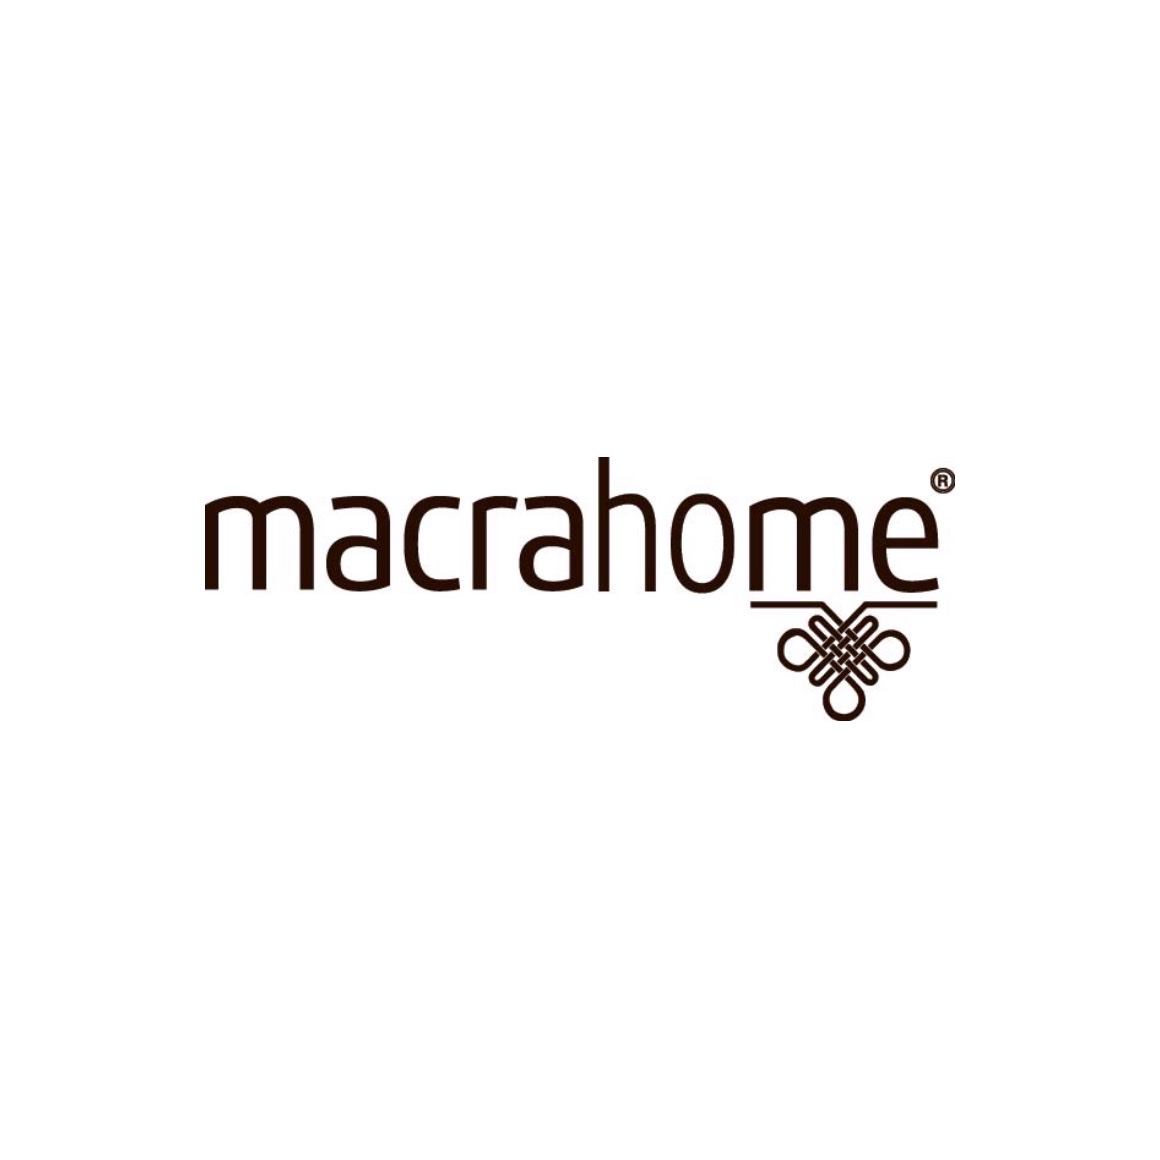 Macrahome